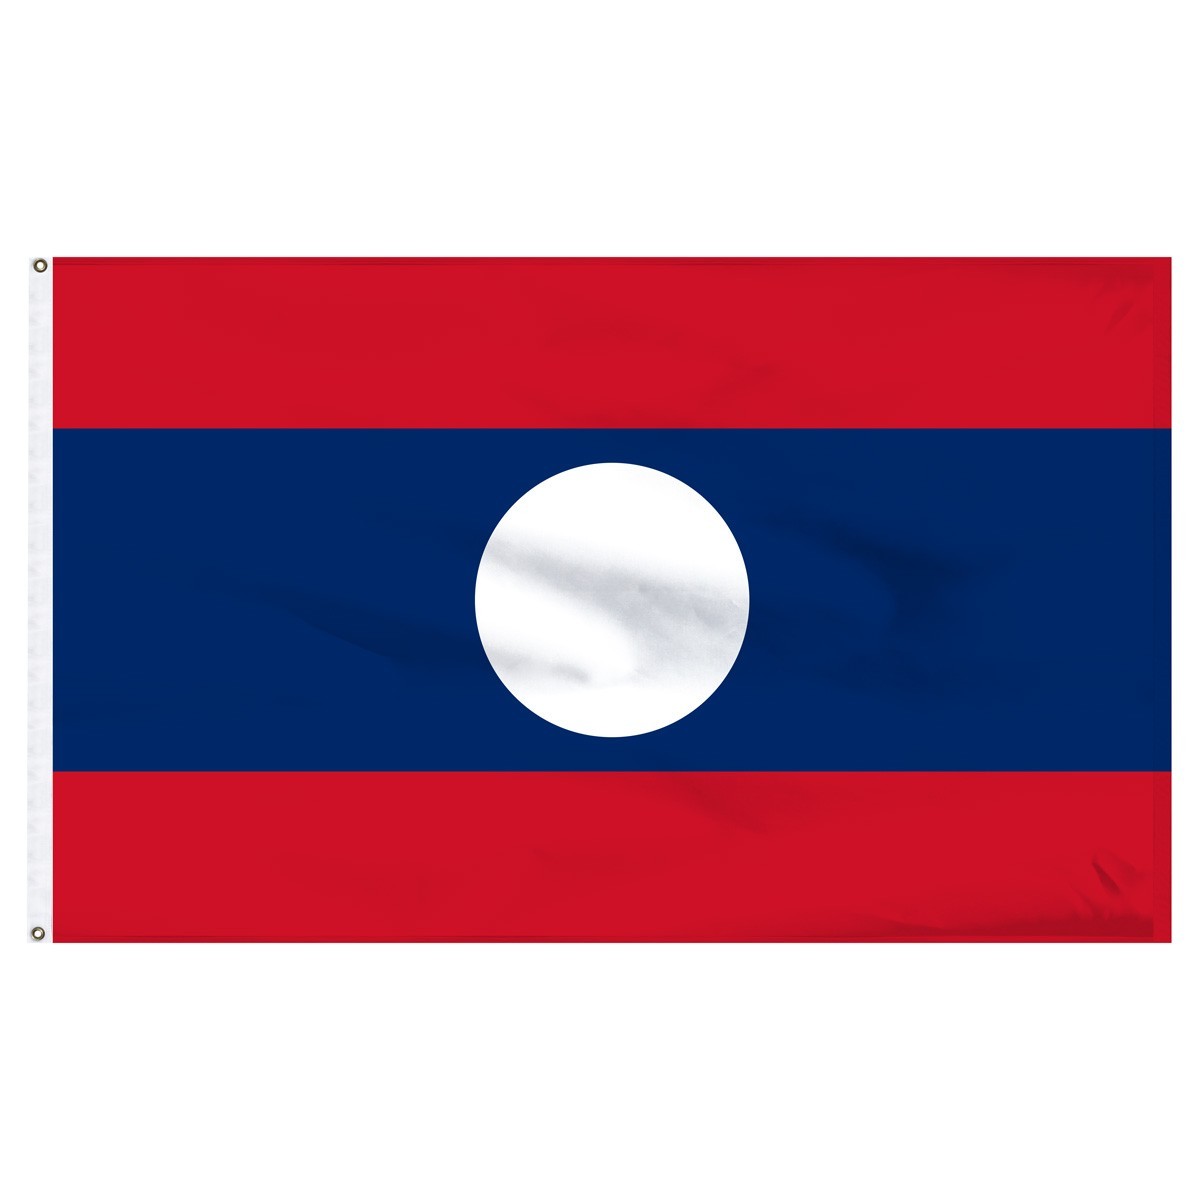 Laos 4' x 6' Outdoor Nylon Flag